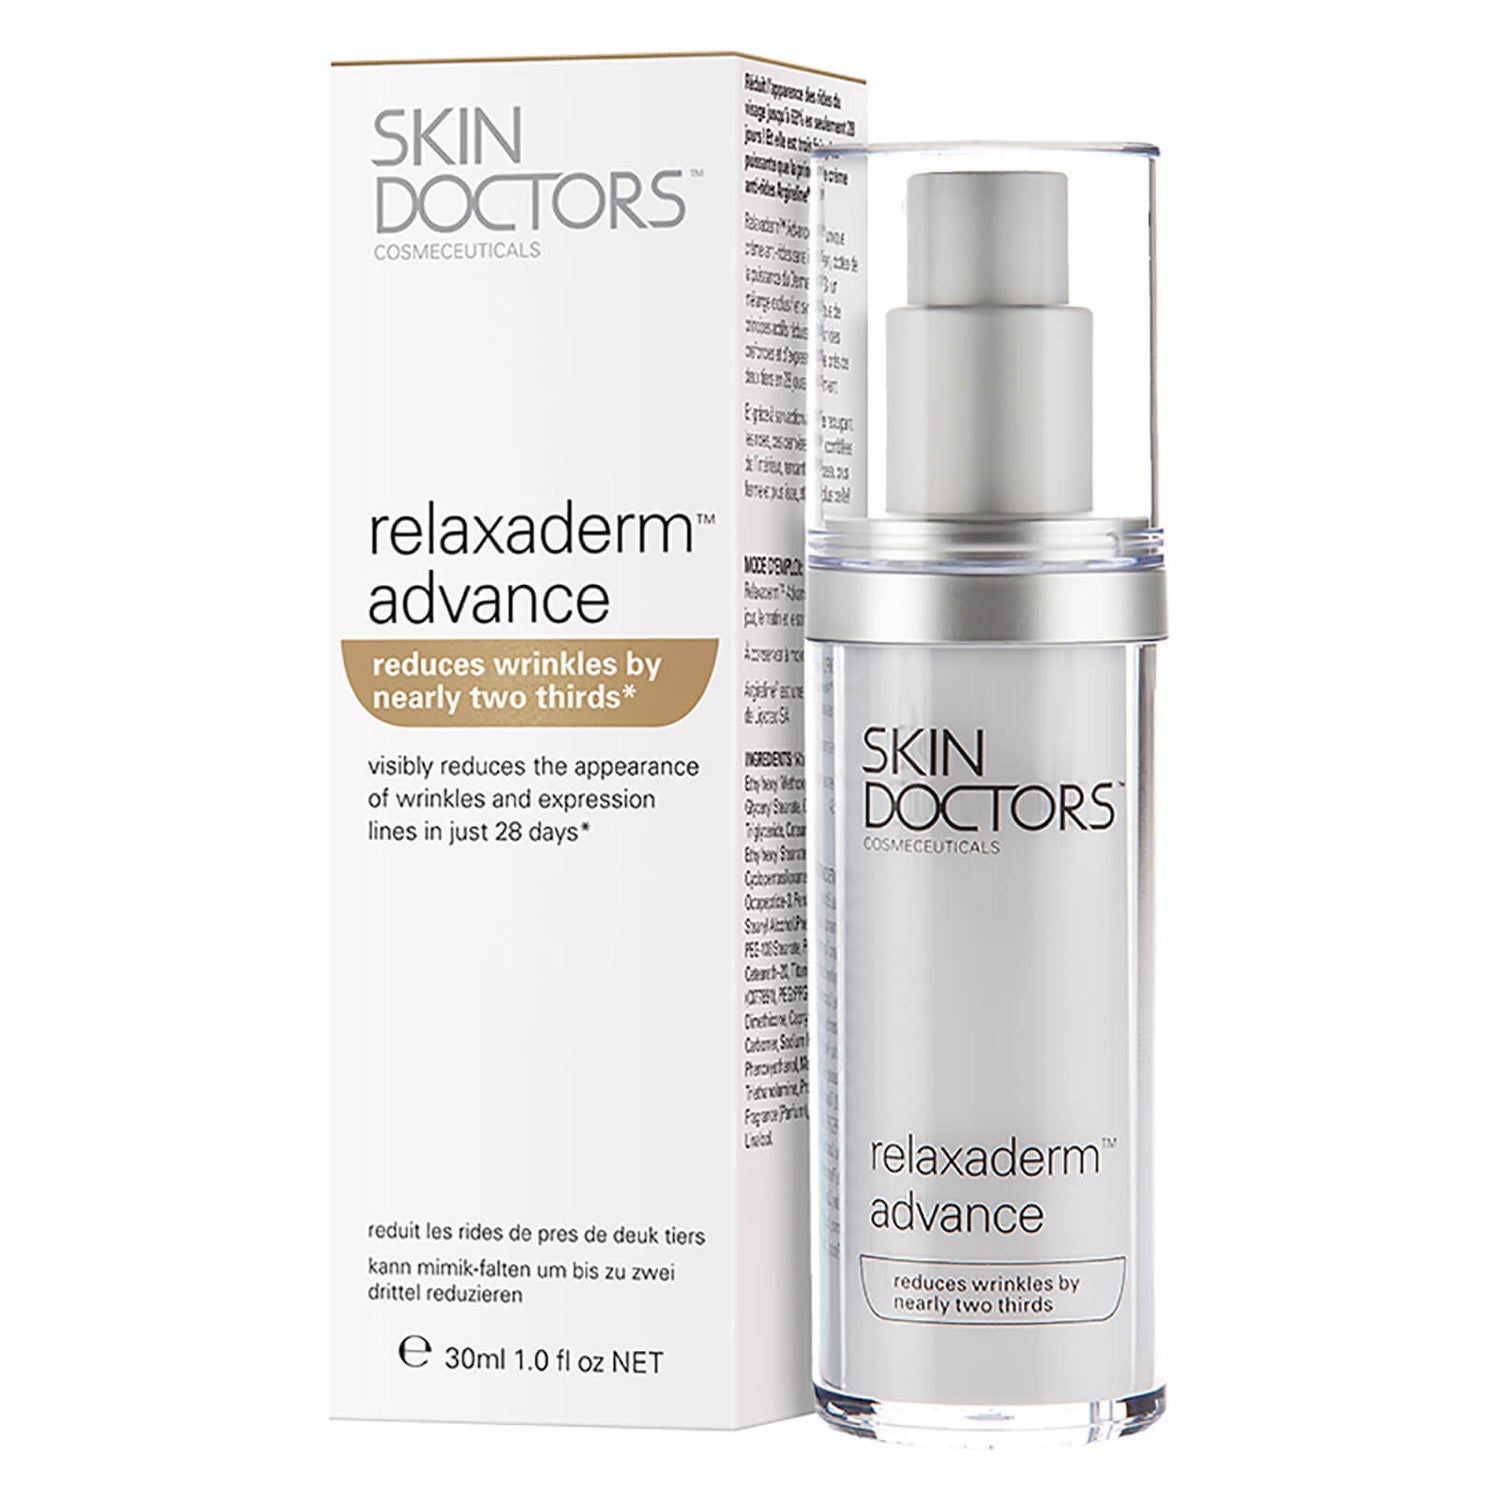 Relaxaderm Advance da Skin Doctors (30 ml)